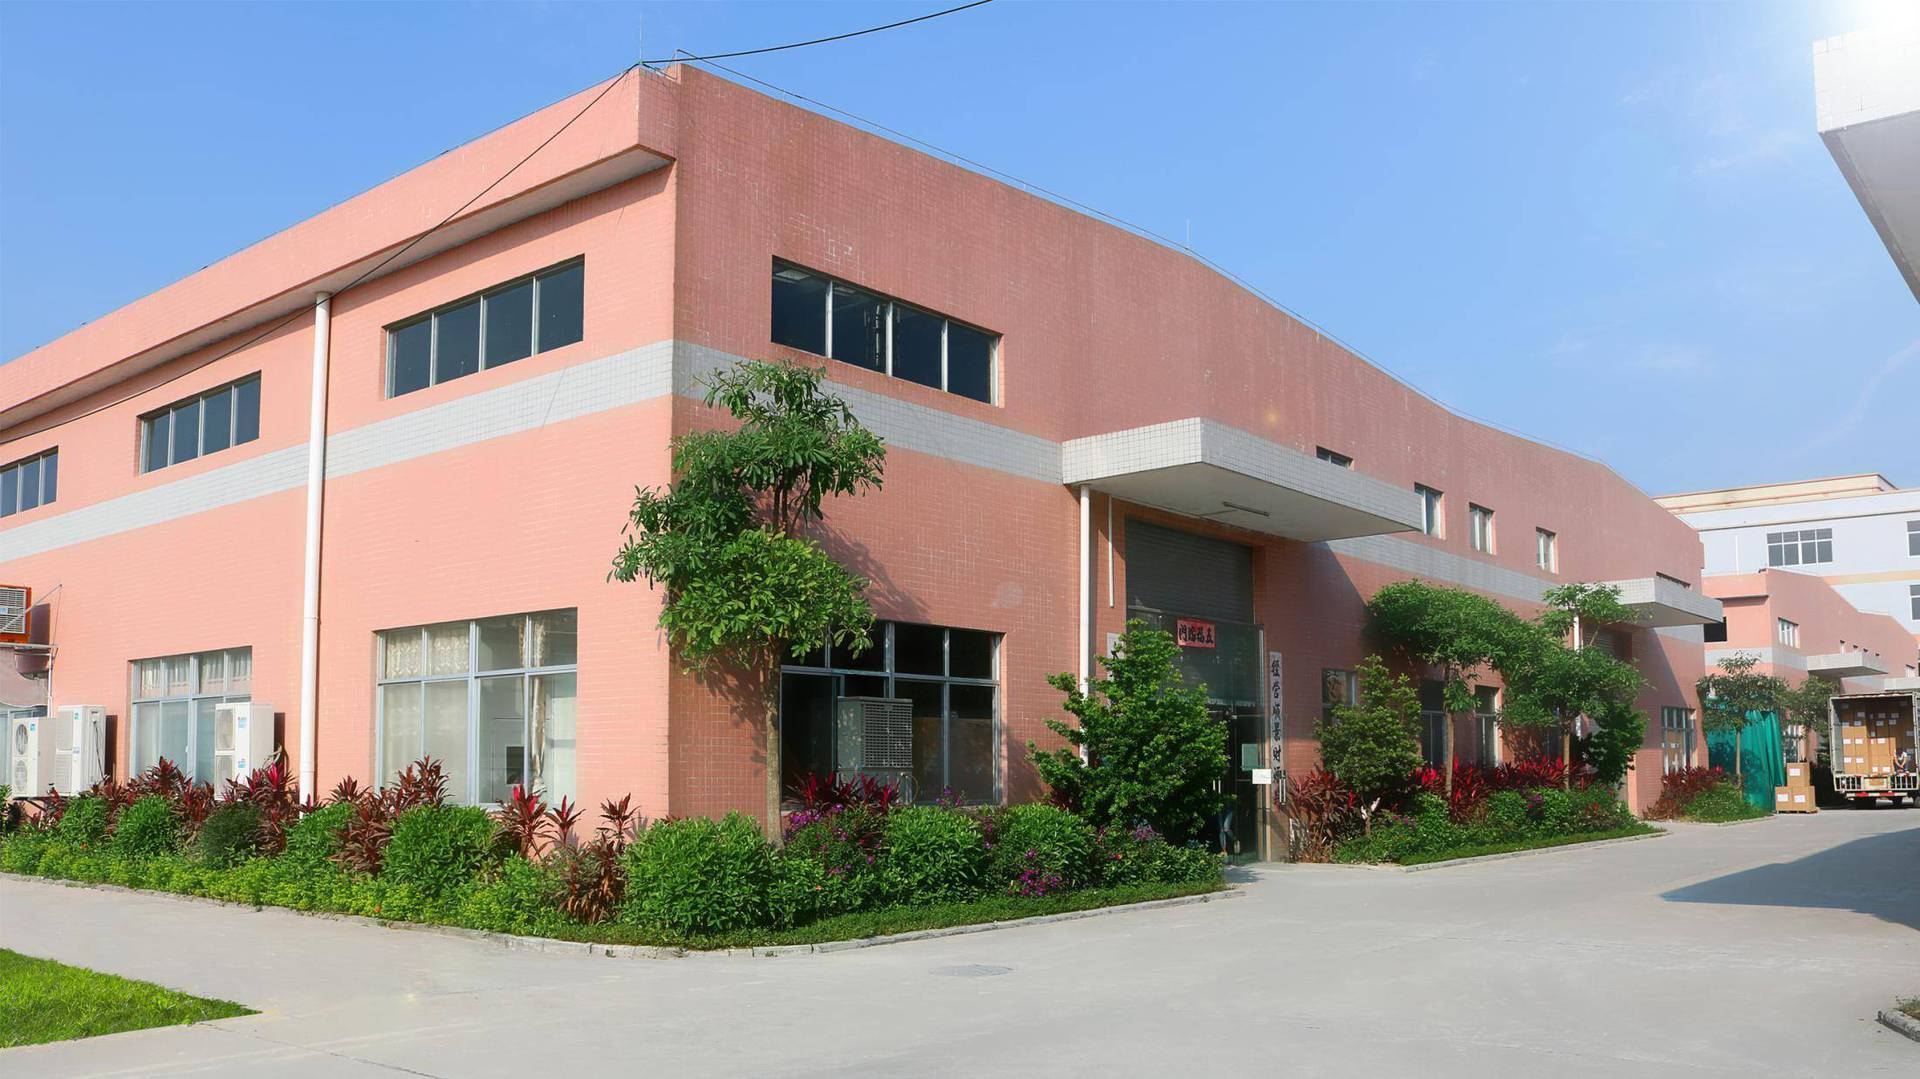   Enping Jieya Nonwoven Products Factory